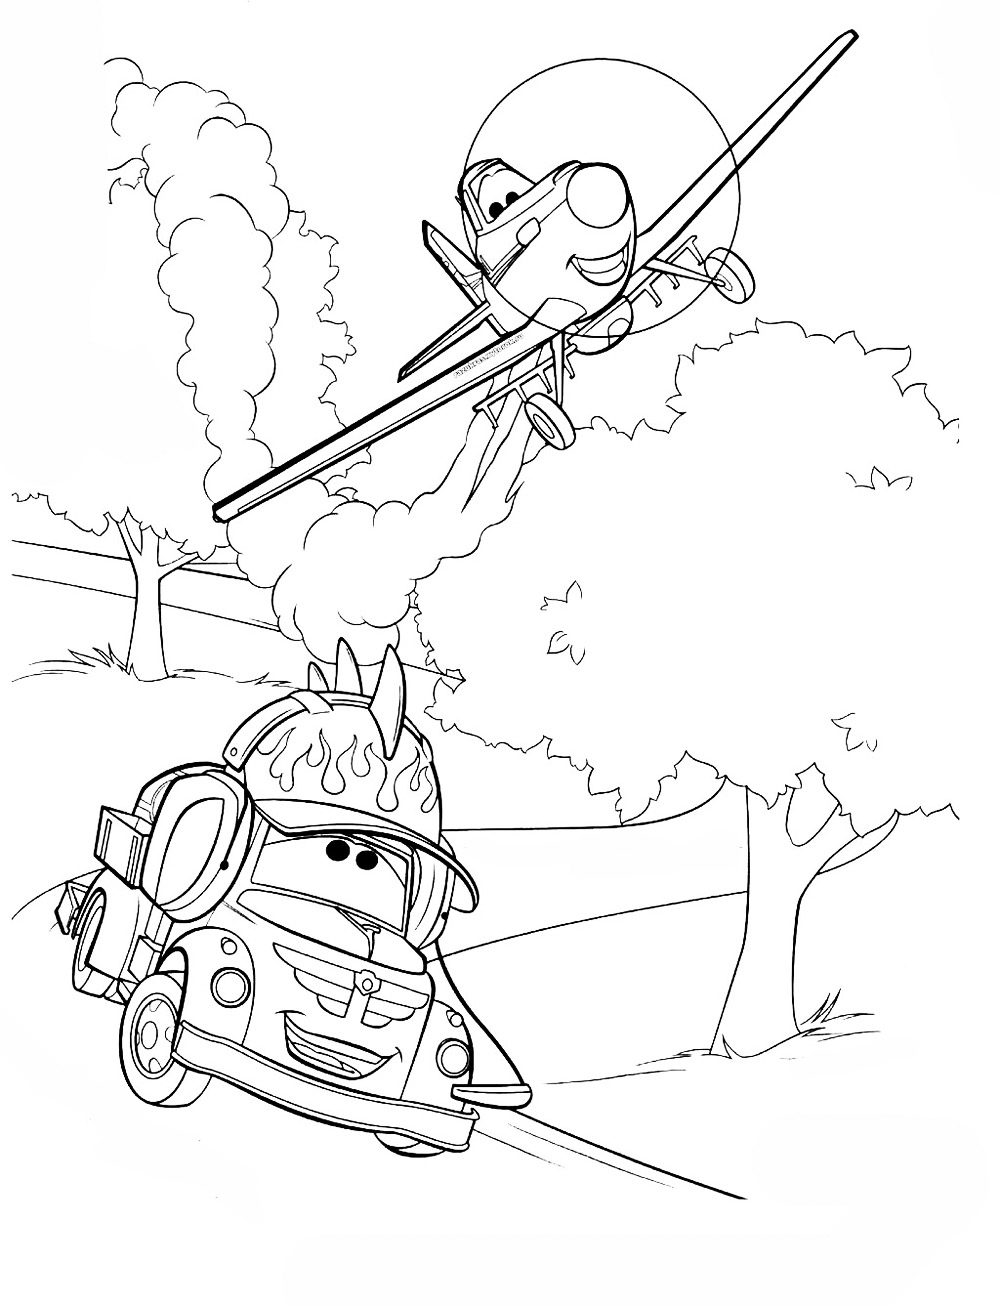 Раскраска самолета Дисней, на фоне дороги и деревьев, где самолет разговаривает с тачкой (самолеты, дисней, развлечение, деревья)